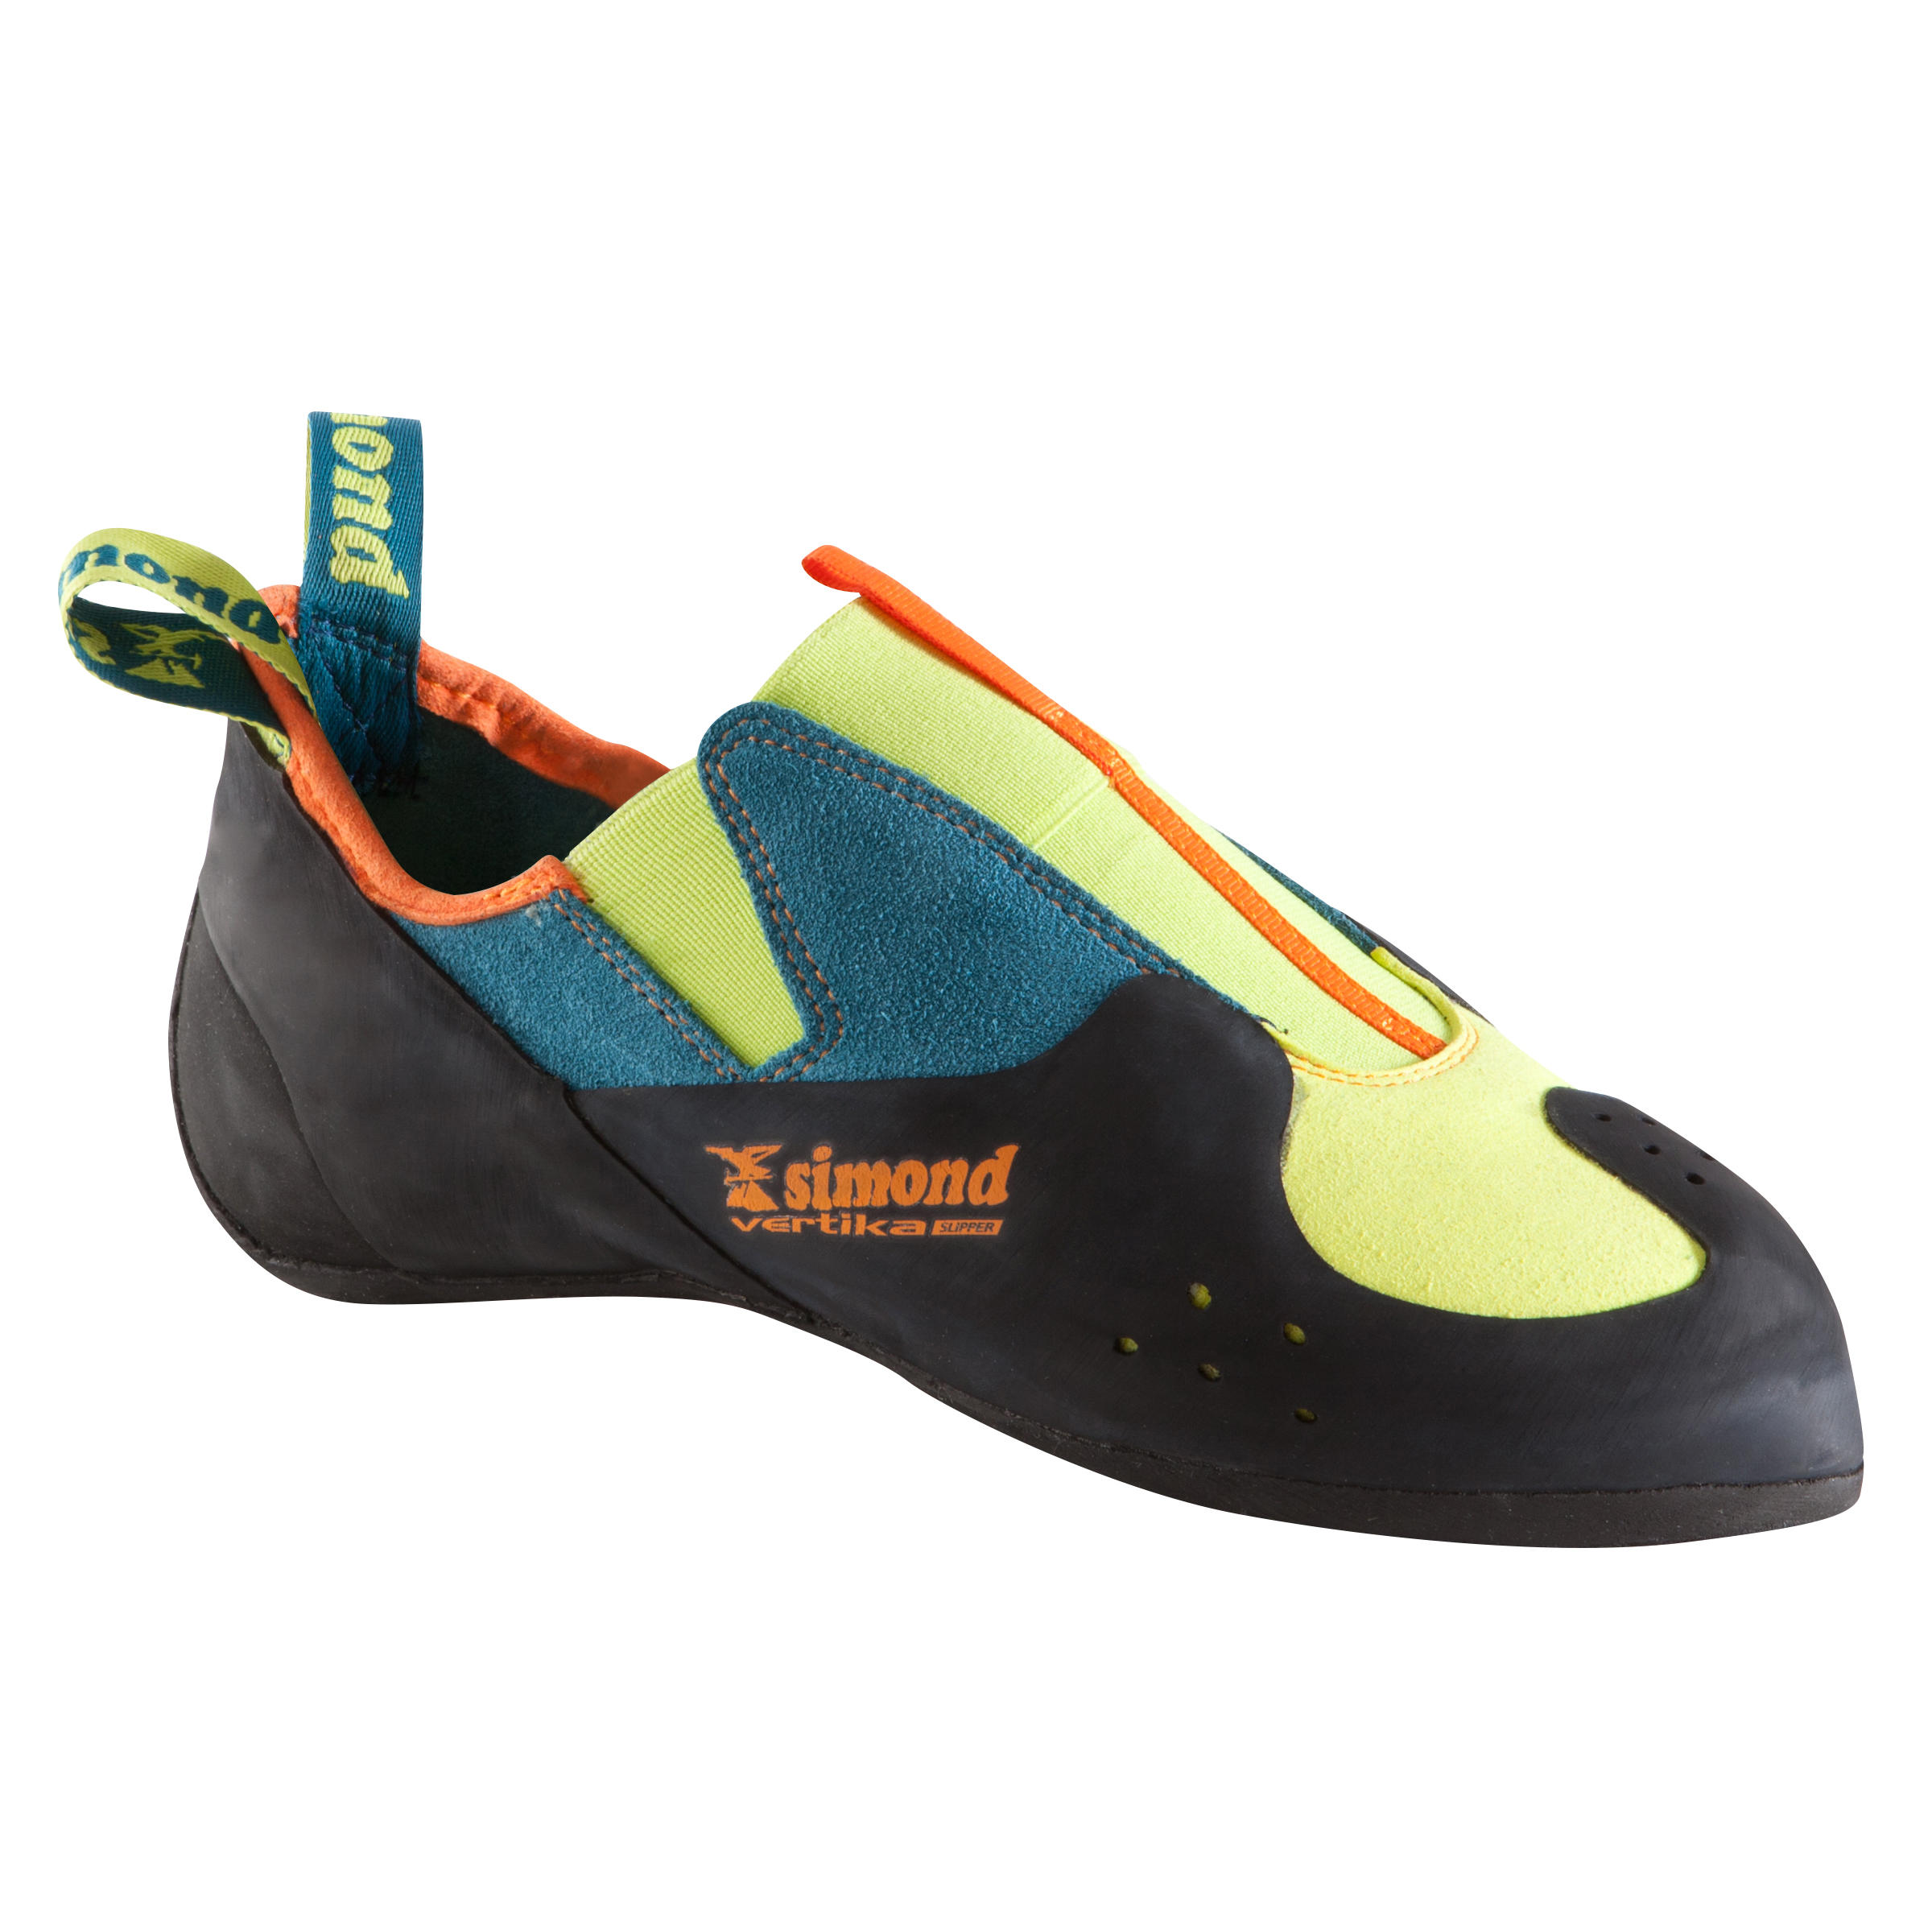 decathlon climbing shoes